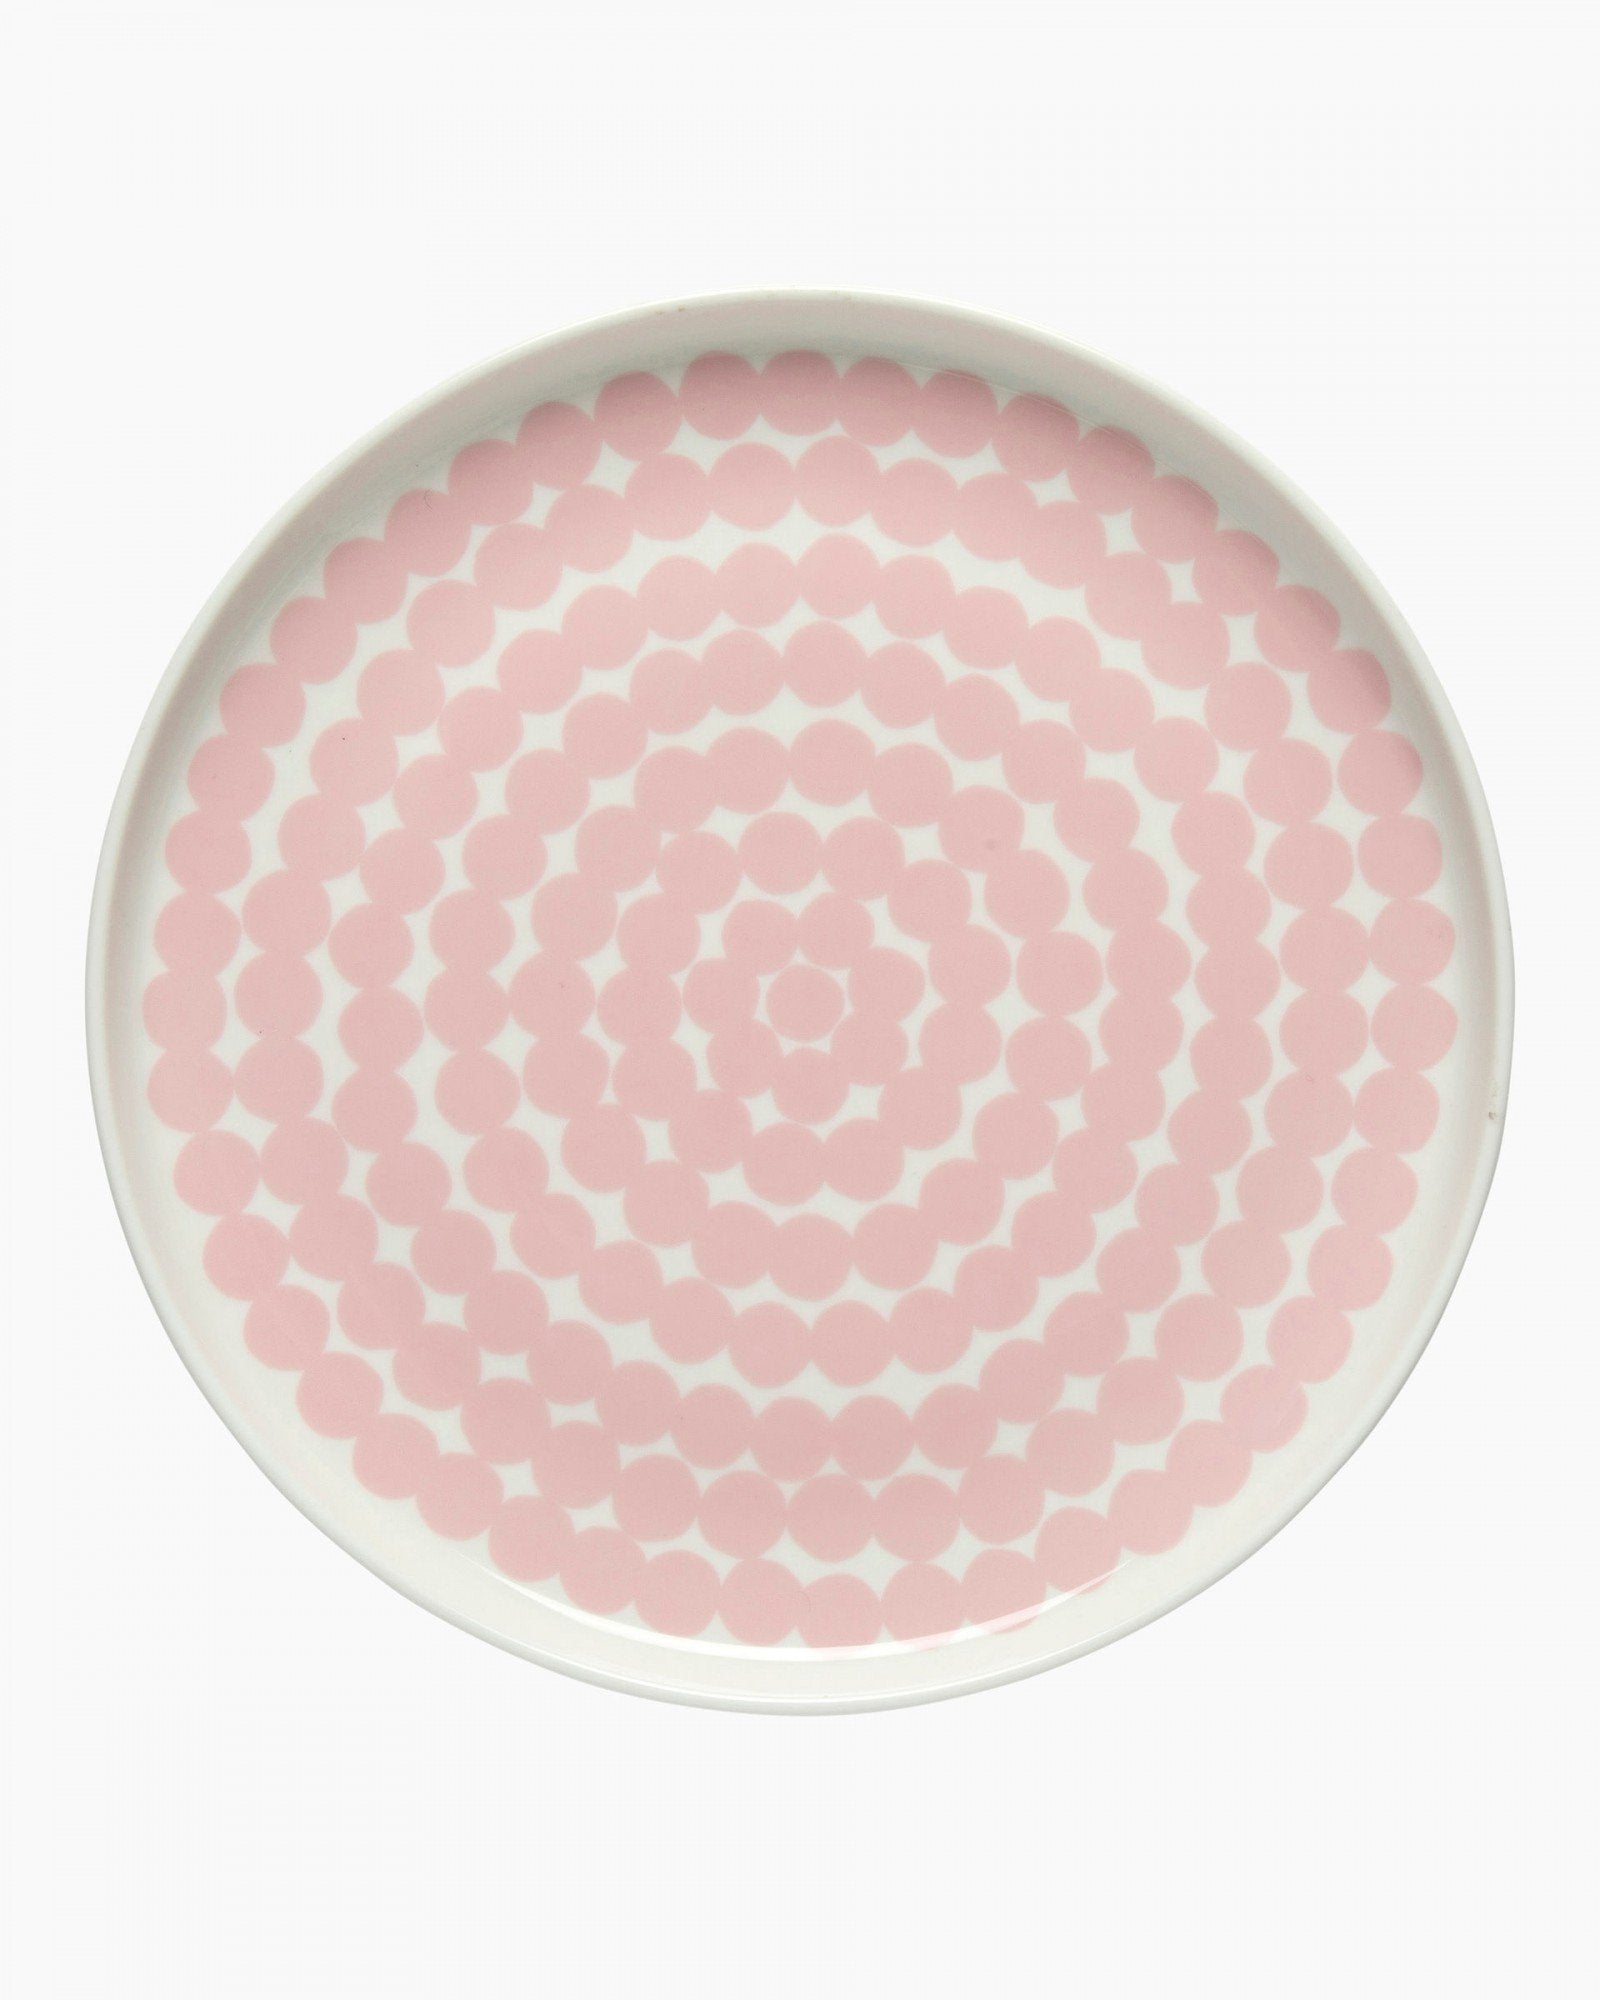 Marimekko, Siirtolapuutarha Plate 20 cm, - Placewares